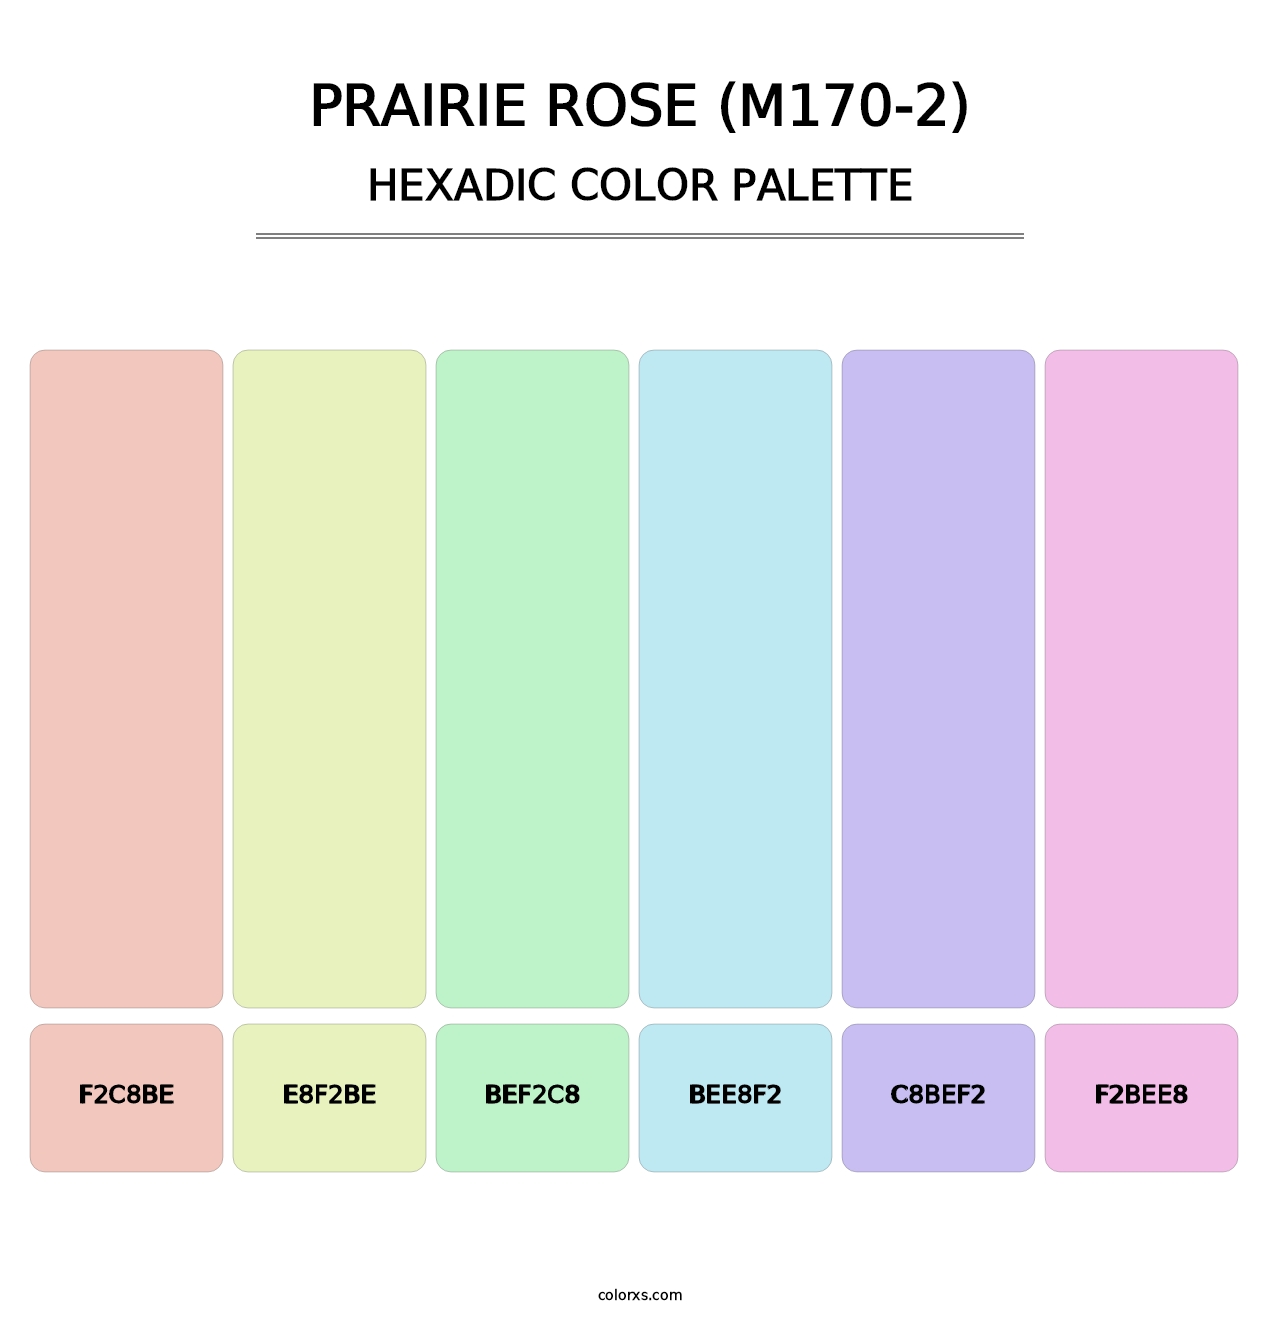 Prairie Rose (M170-2) - Hexadic Color Palette